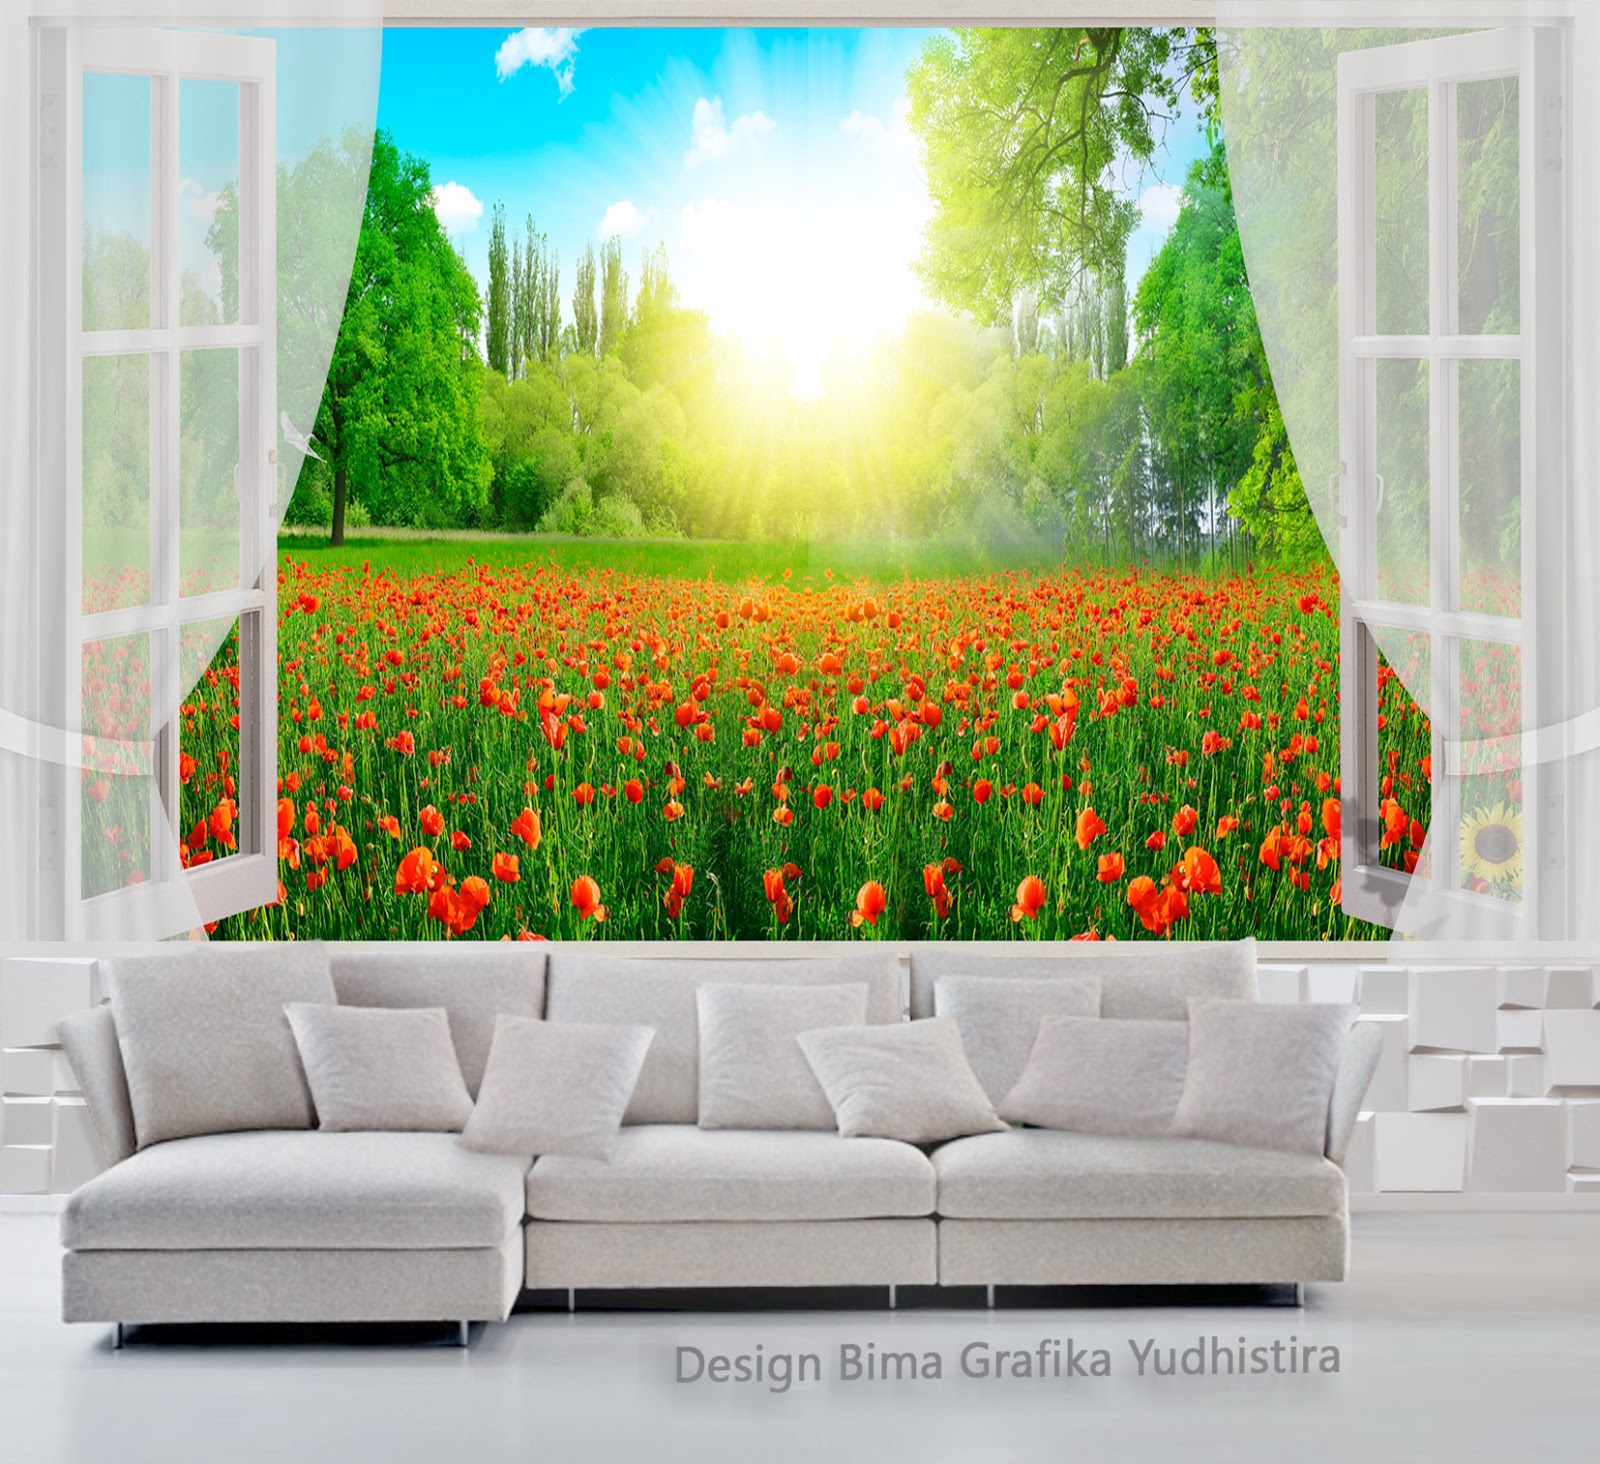 壁紙dinding 3d,自然,自然の風景,緑,現代美術,壁画